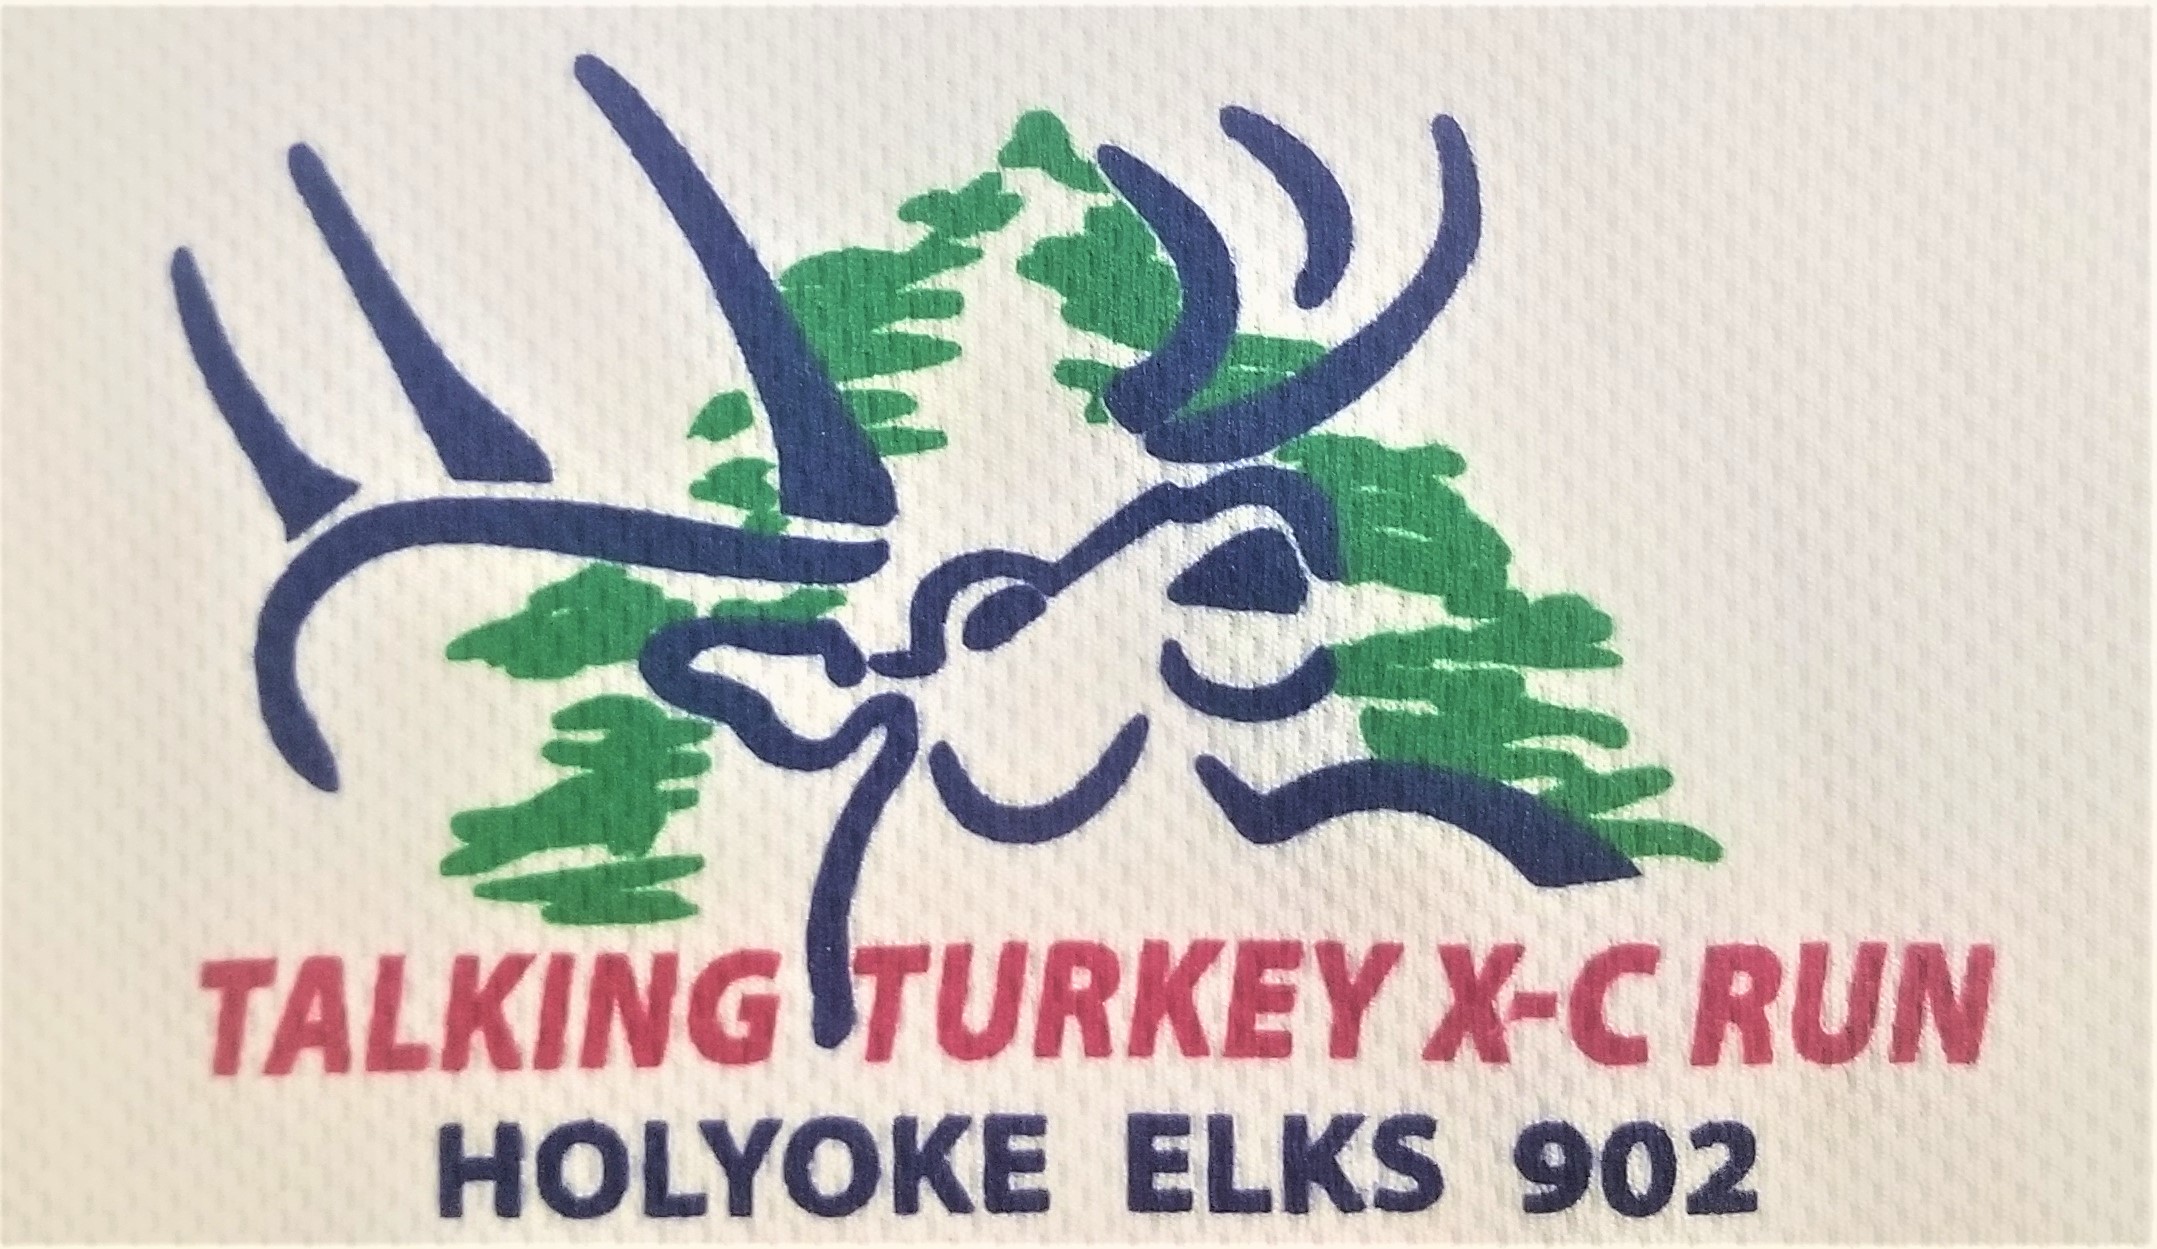 Holyoke Elks Talking Turkey 6mi XC Road Race Results History